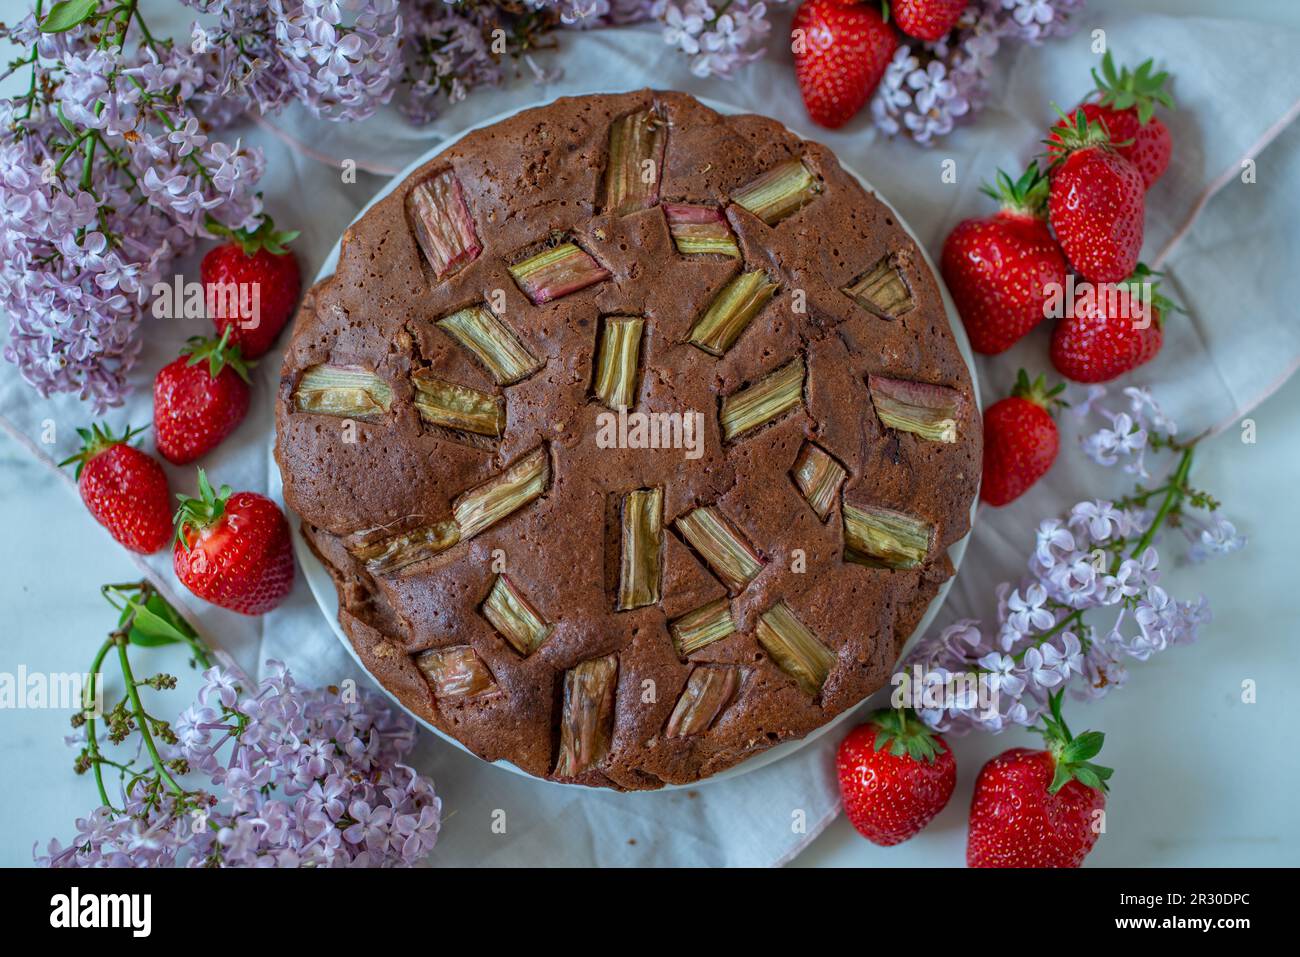 gâteau de rhubarbe au chocolat fait maison sur une table Banque D'Images